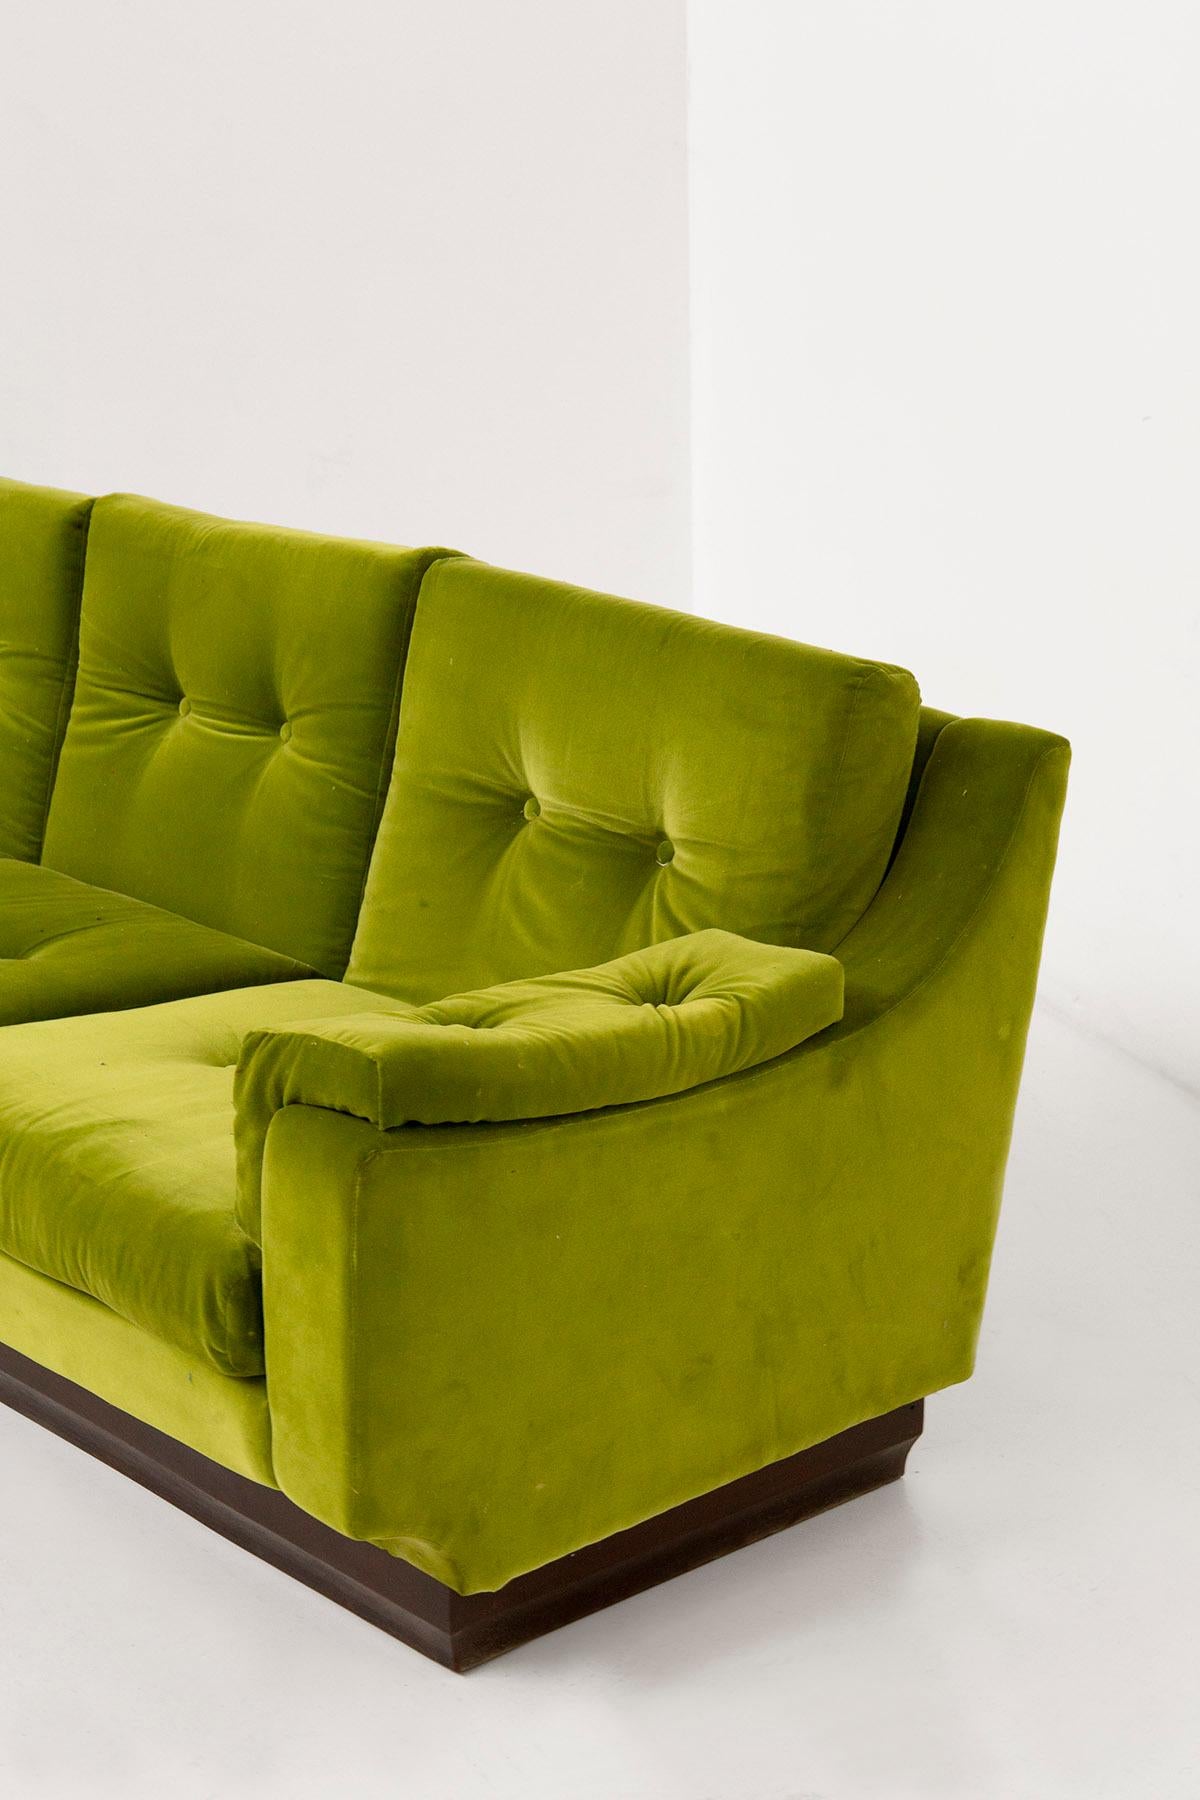 grünes samt sofa